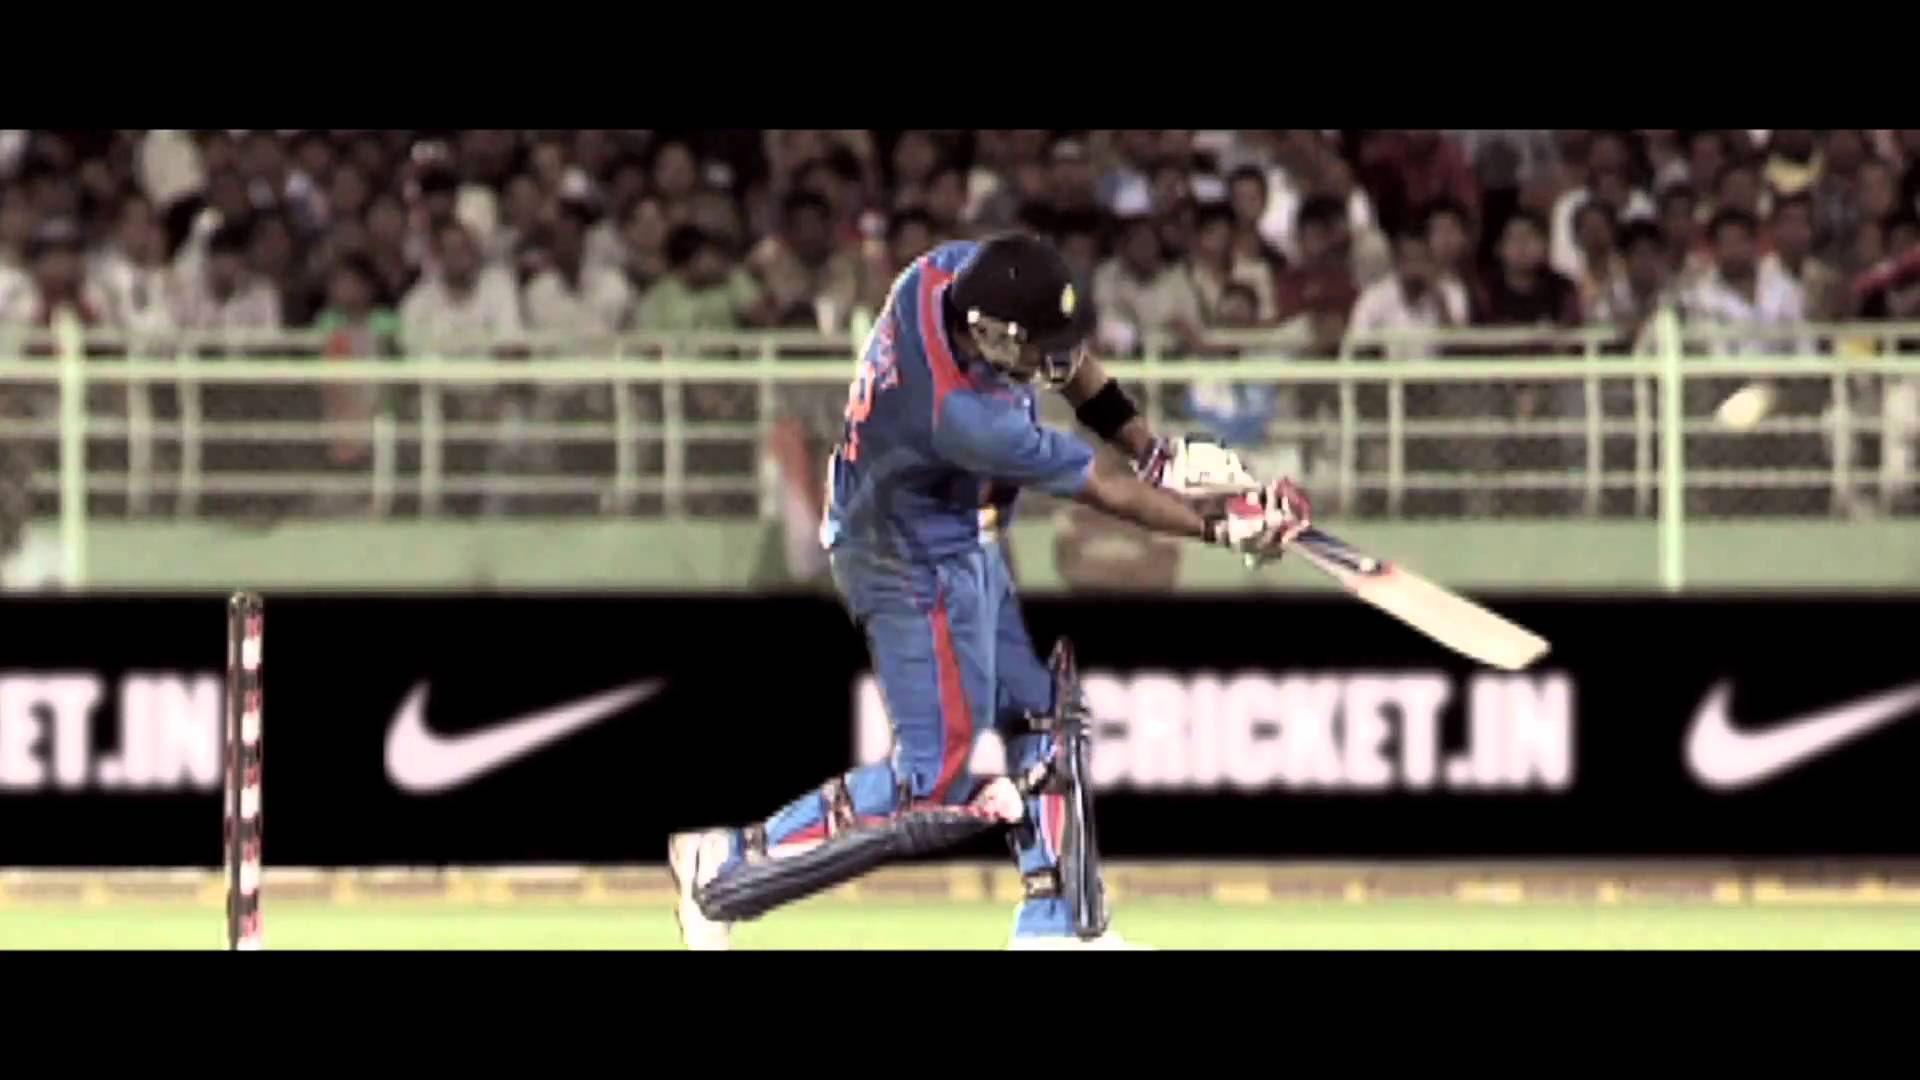 भारतीय क्रिकेट टीम ने अपने ऑफिशियल किट स्पान्सर 'नाइकी' से जतायी नाख़ुशी, कर दी बीसीसीआई को शिकायत 1